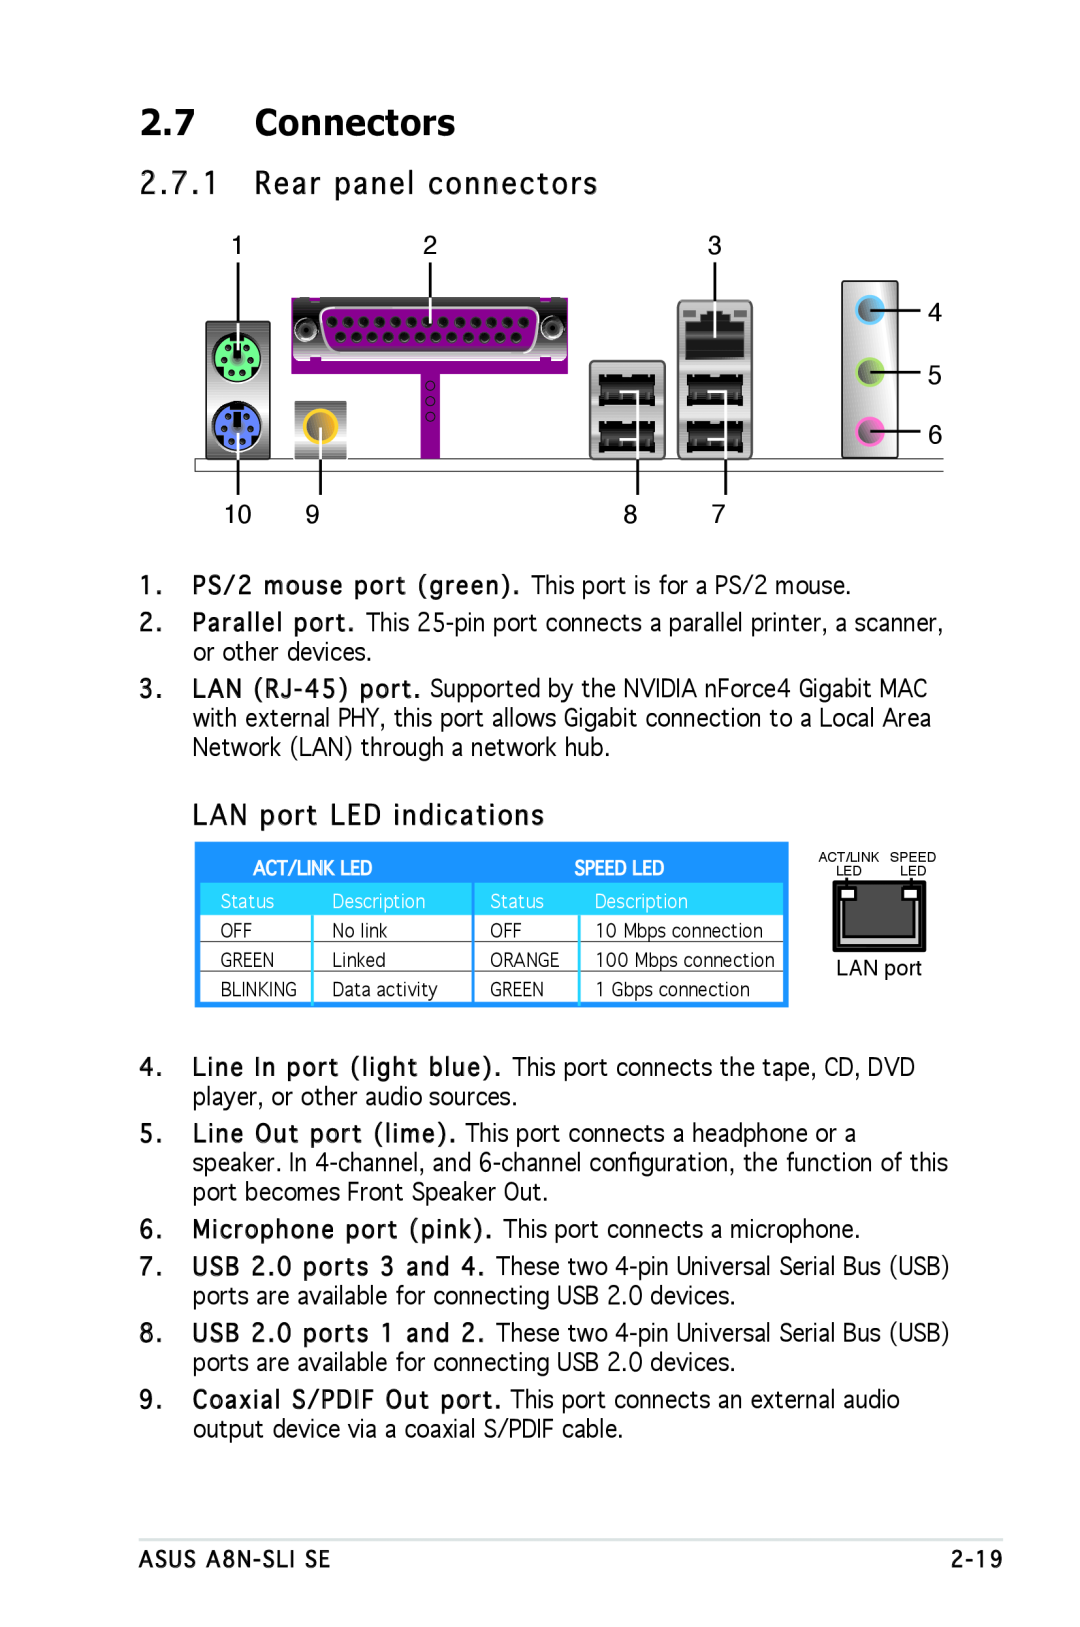 Asus A8N-SLI SE manual Connectors, Rear panel connectors, LAN port LED indications 